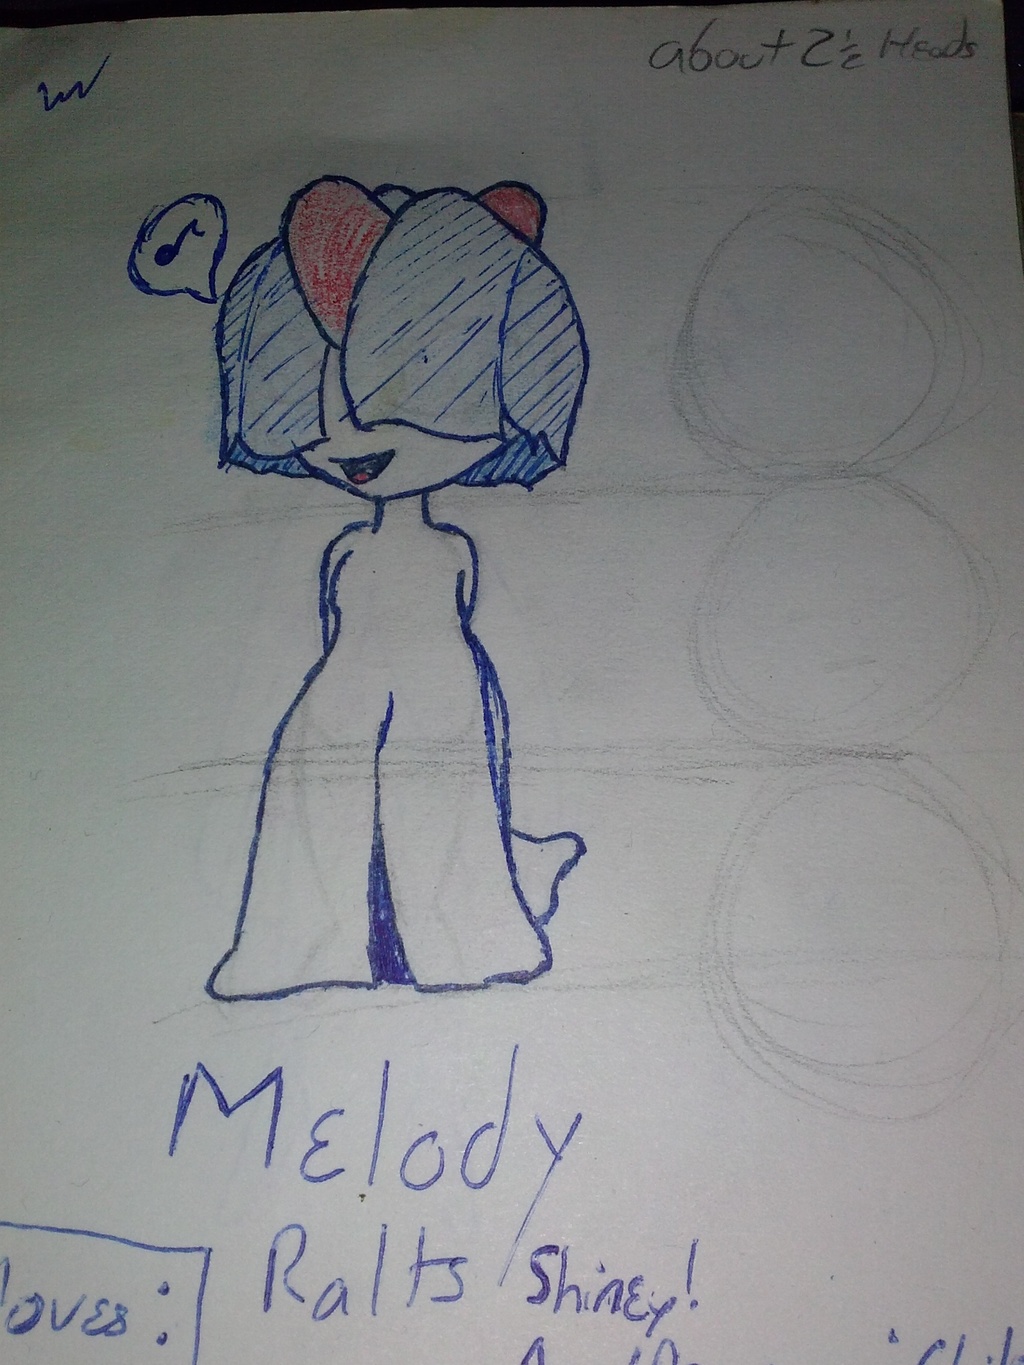 Melody - Ralts